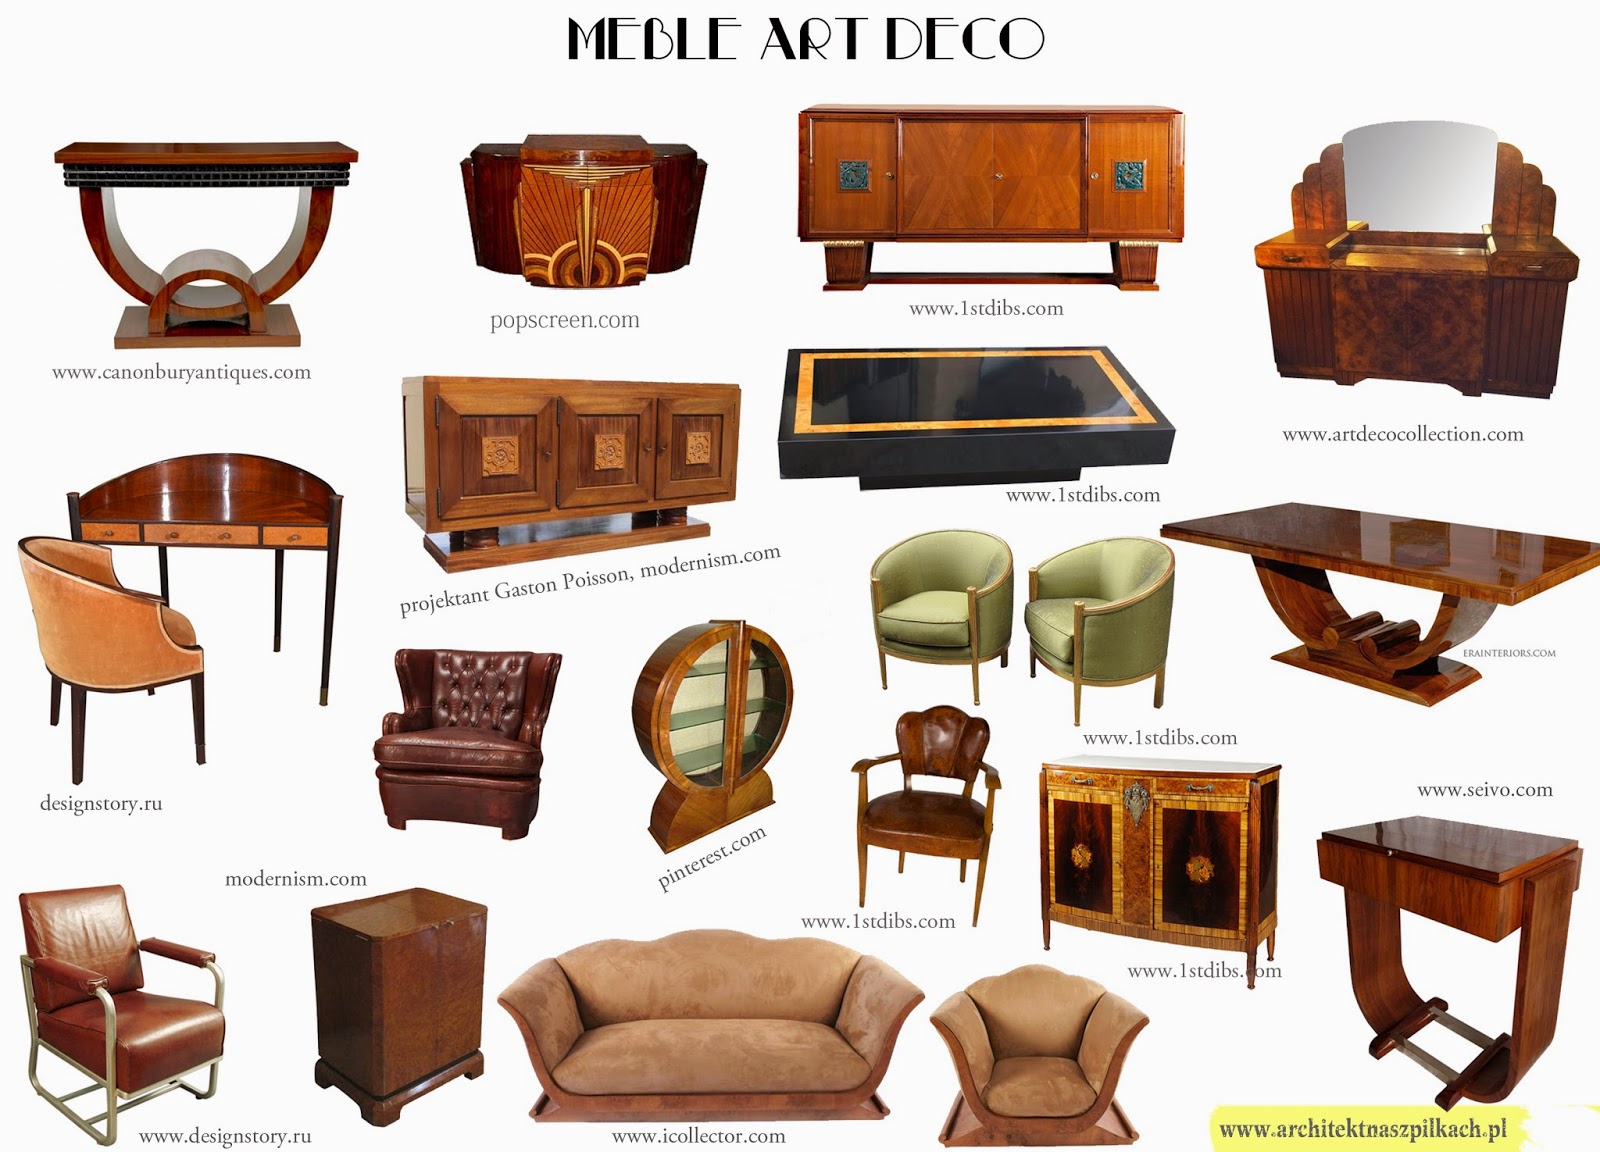 meble Art Deco, cechy charakterystyczne, antyki